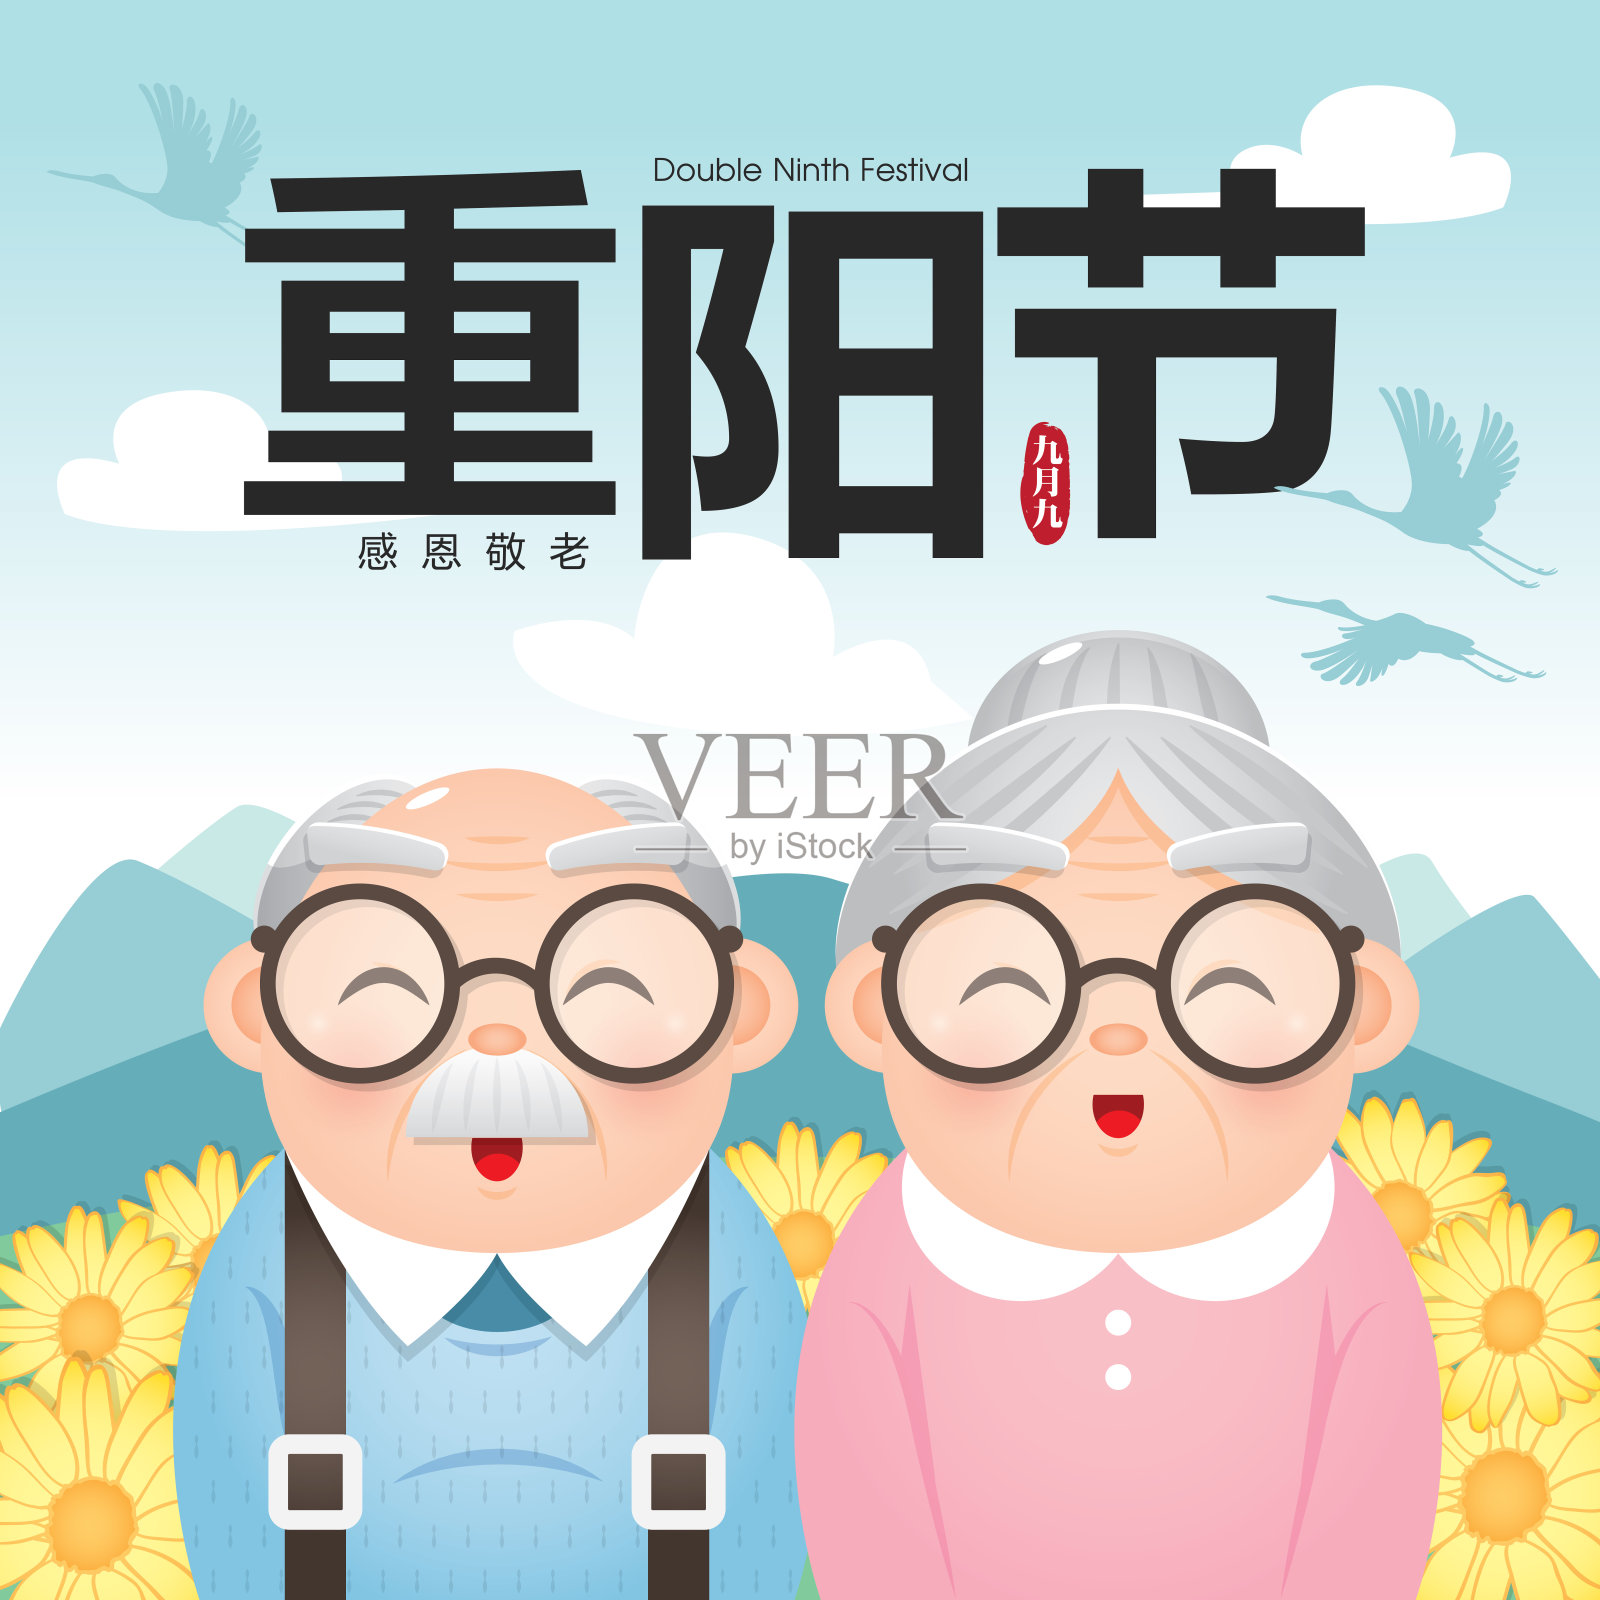 重阳节/重阳节问候插画以爷爷奶奶和郊外为背景。(翻译:重阳节。)设计模板素材